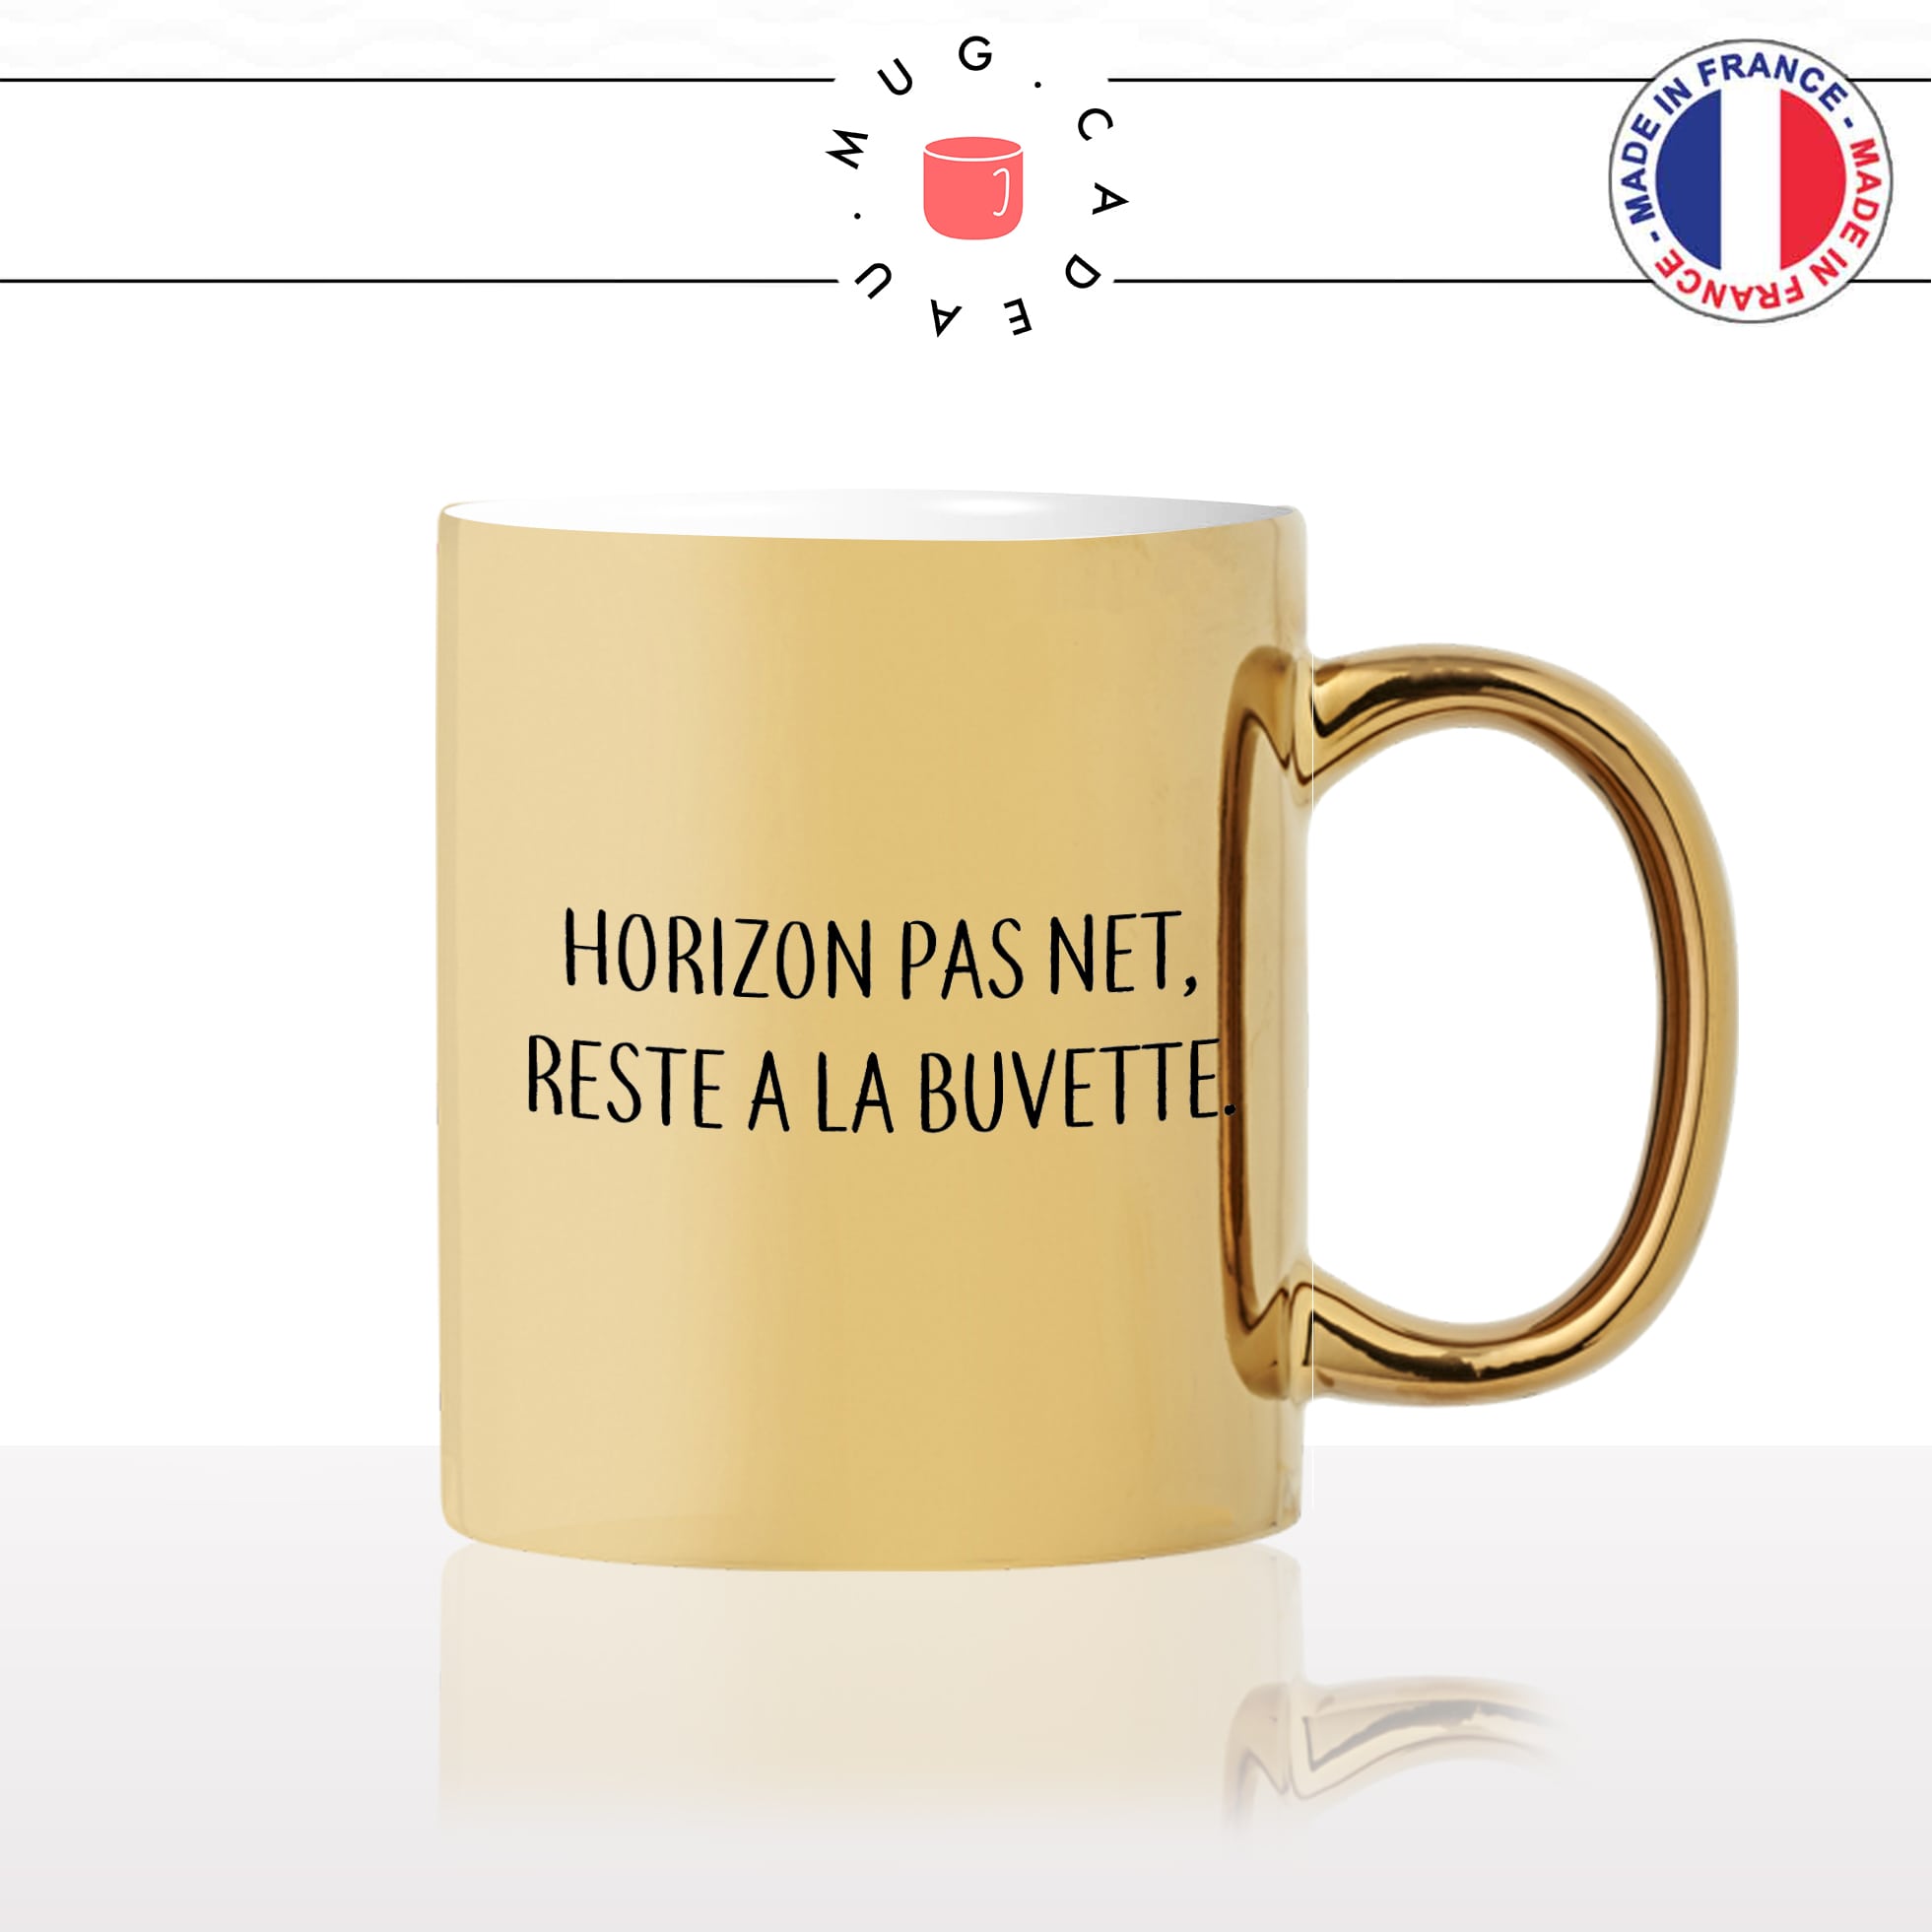 mug-tasse-or-gold-doré-proverbe-breton-normand-apéro-pluie-horizon-pasnet-reste-a-la-buvette-fun-idée-cadeau-original-personnalisé-café-thé2-min